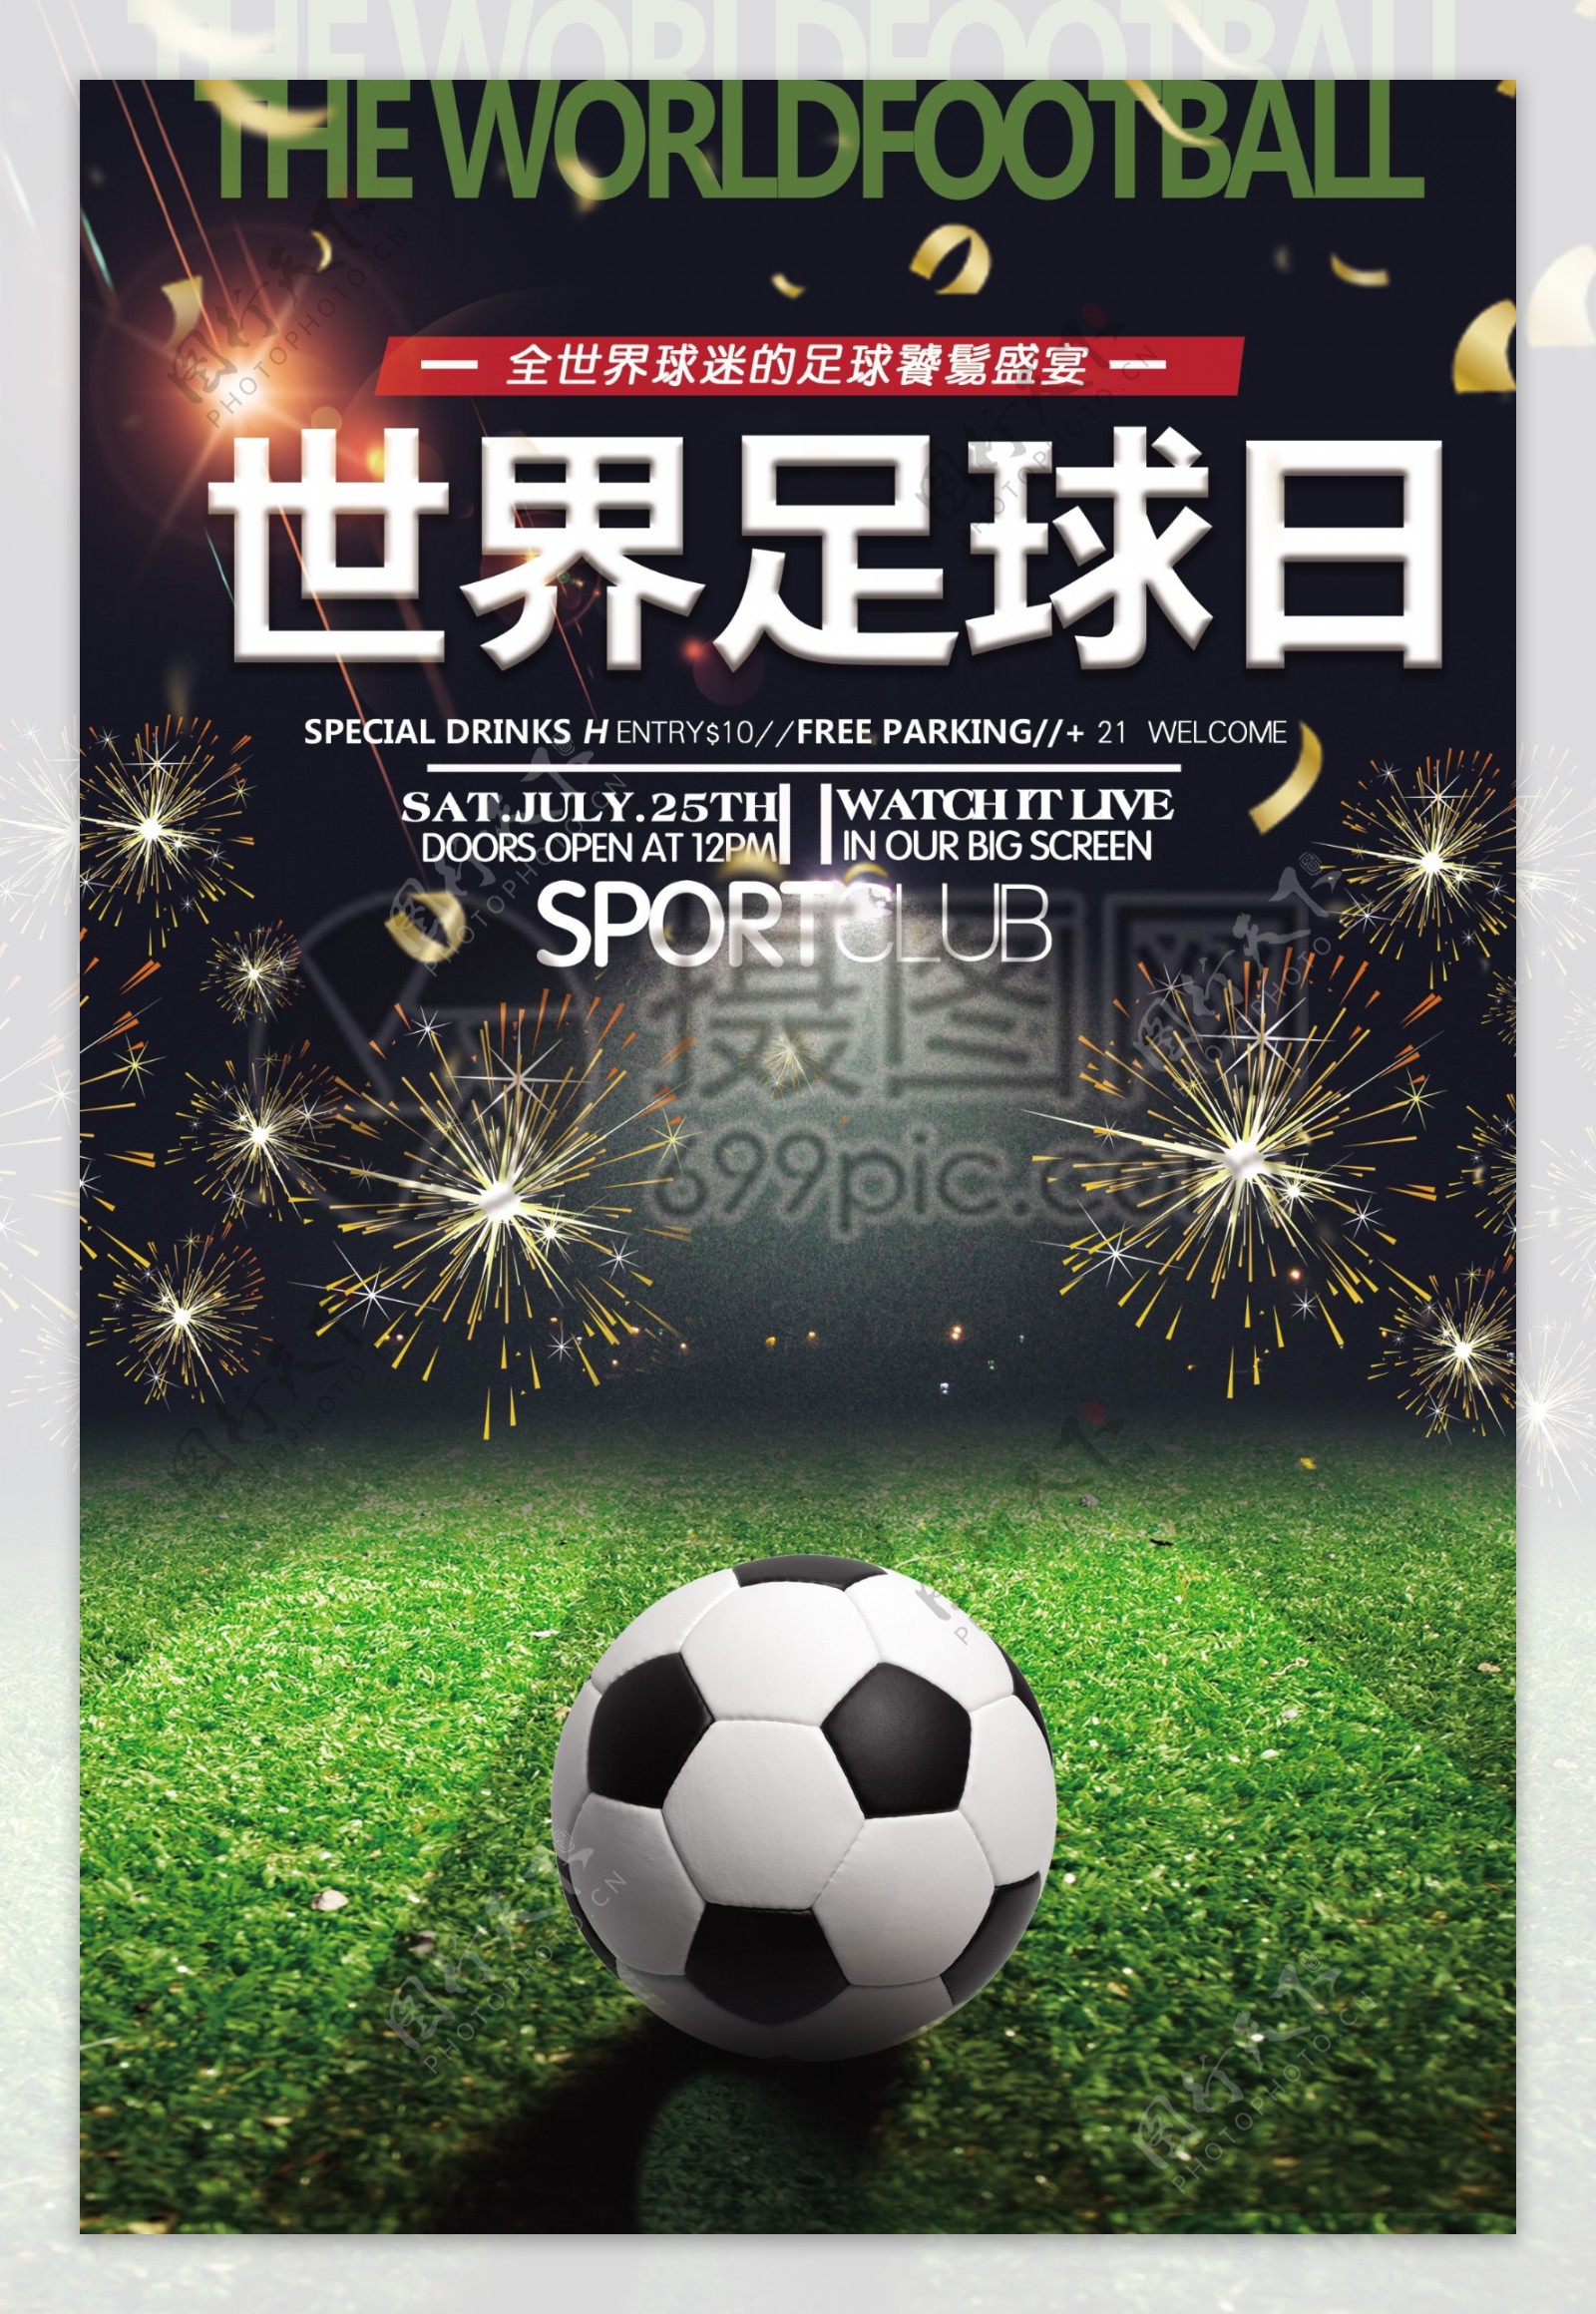 世界足球日宣传海报